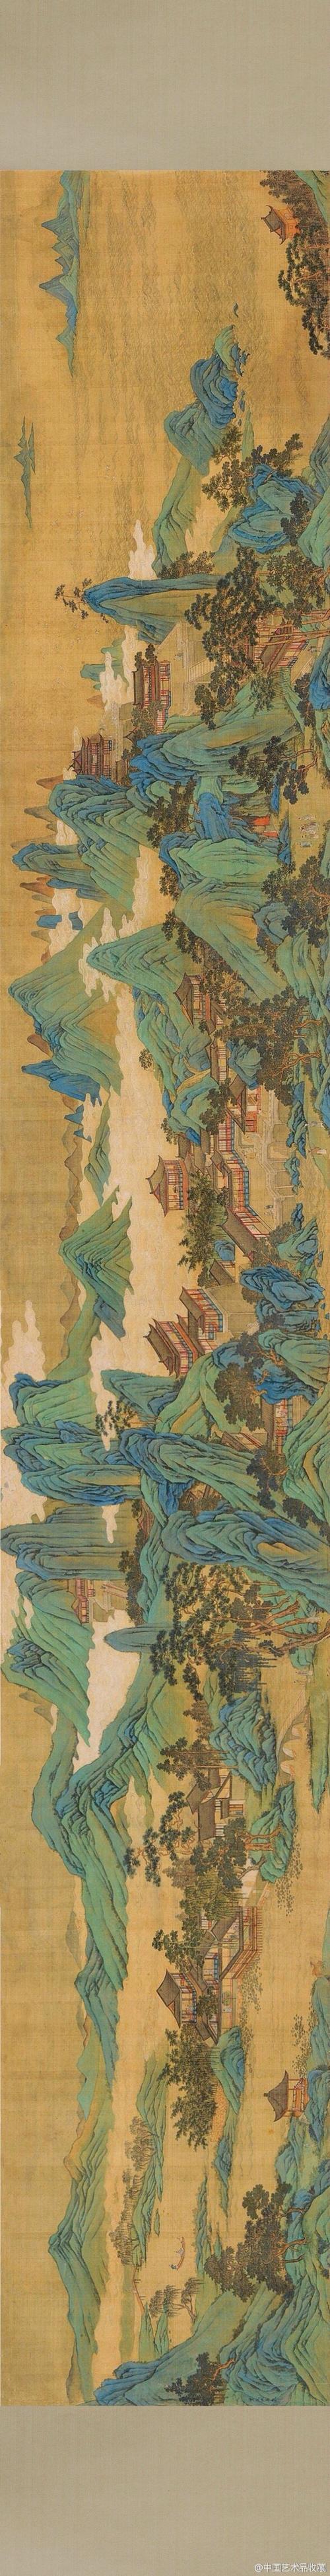 【明 仇英 《蓬莱仙境图》 】卷,绢本设色,50×341cm,私人收藏.